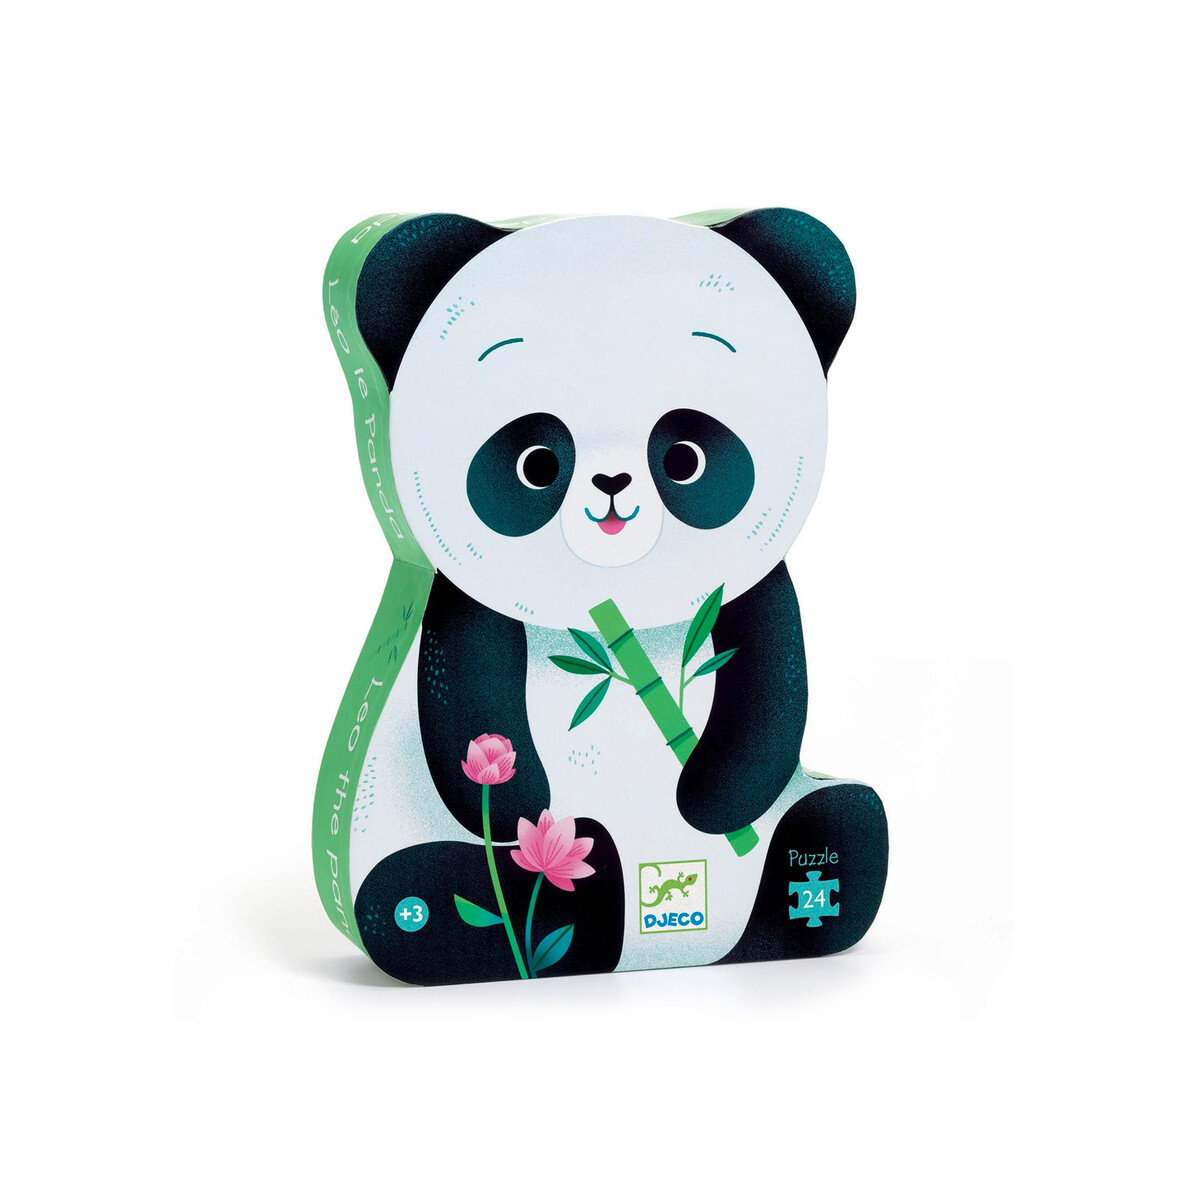 Puzzle Djeco 24 piezas - Diseño Leo The Panda 